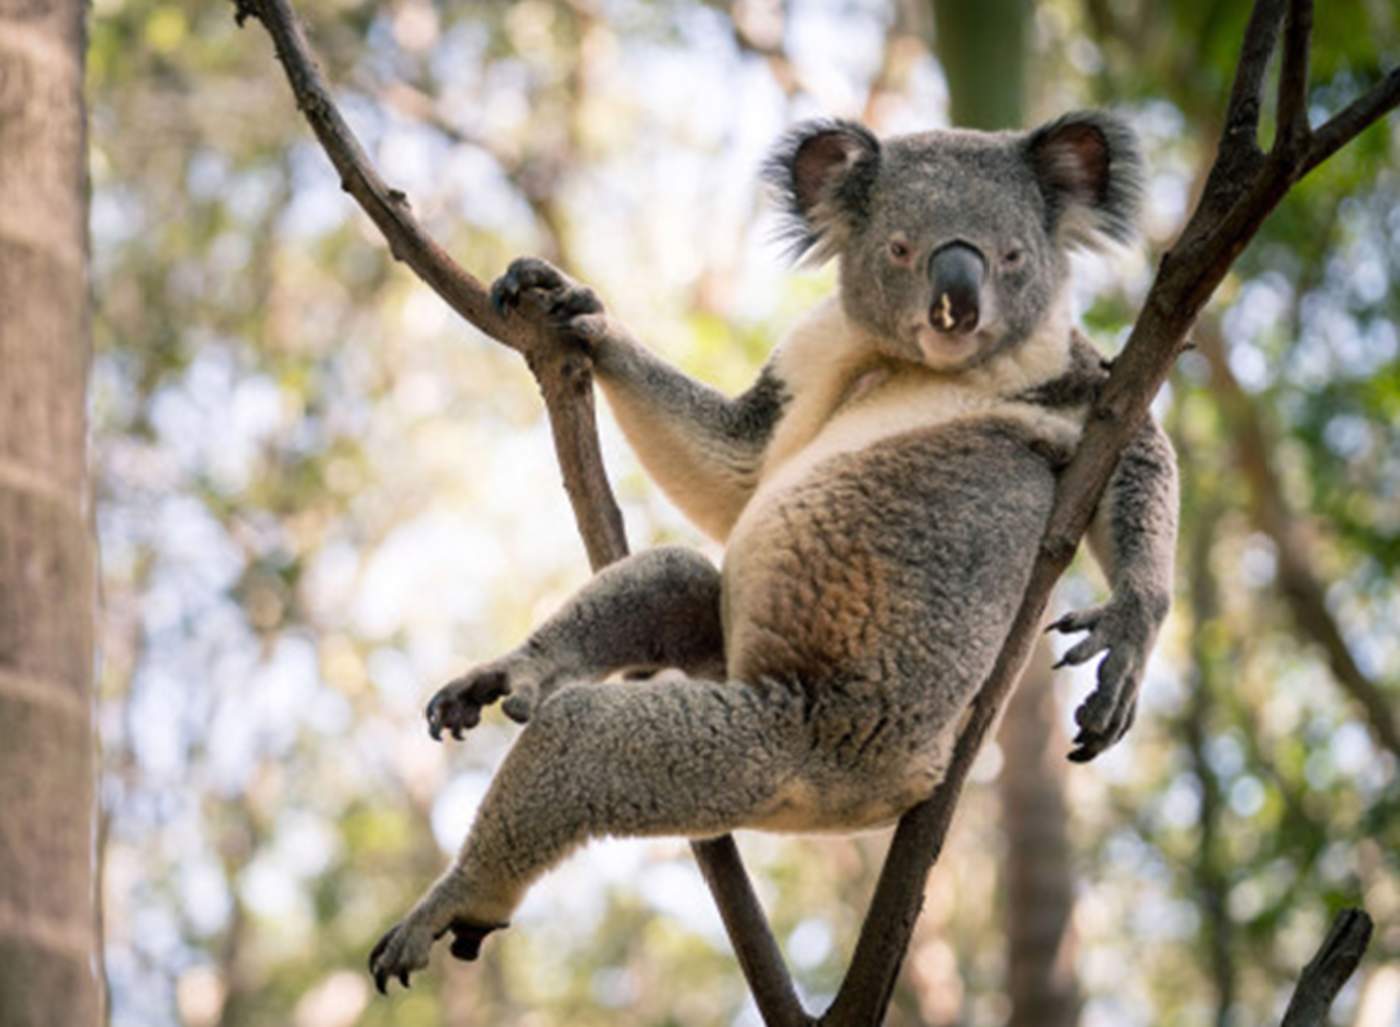 La actitud del koala y su pose sugerente son una combinación que resulta divertida. (INTERNET)